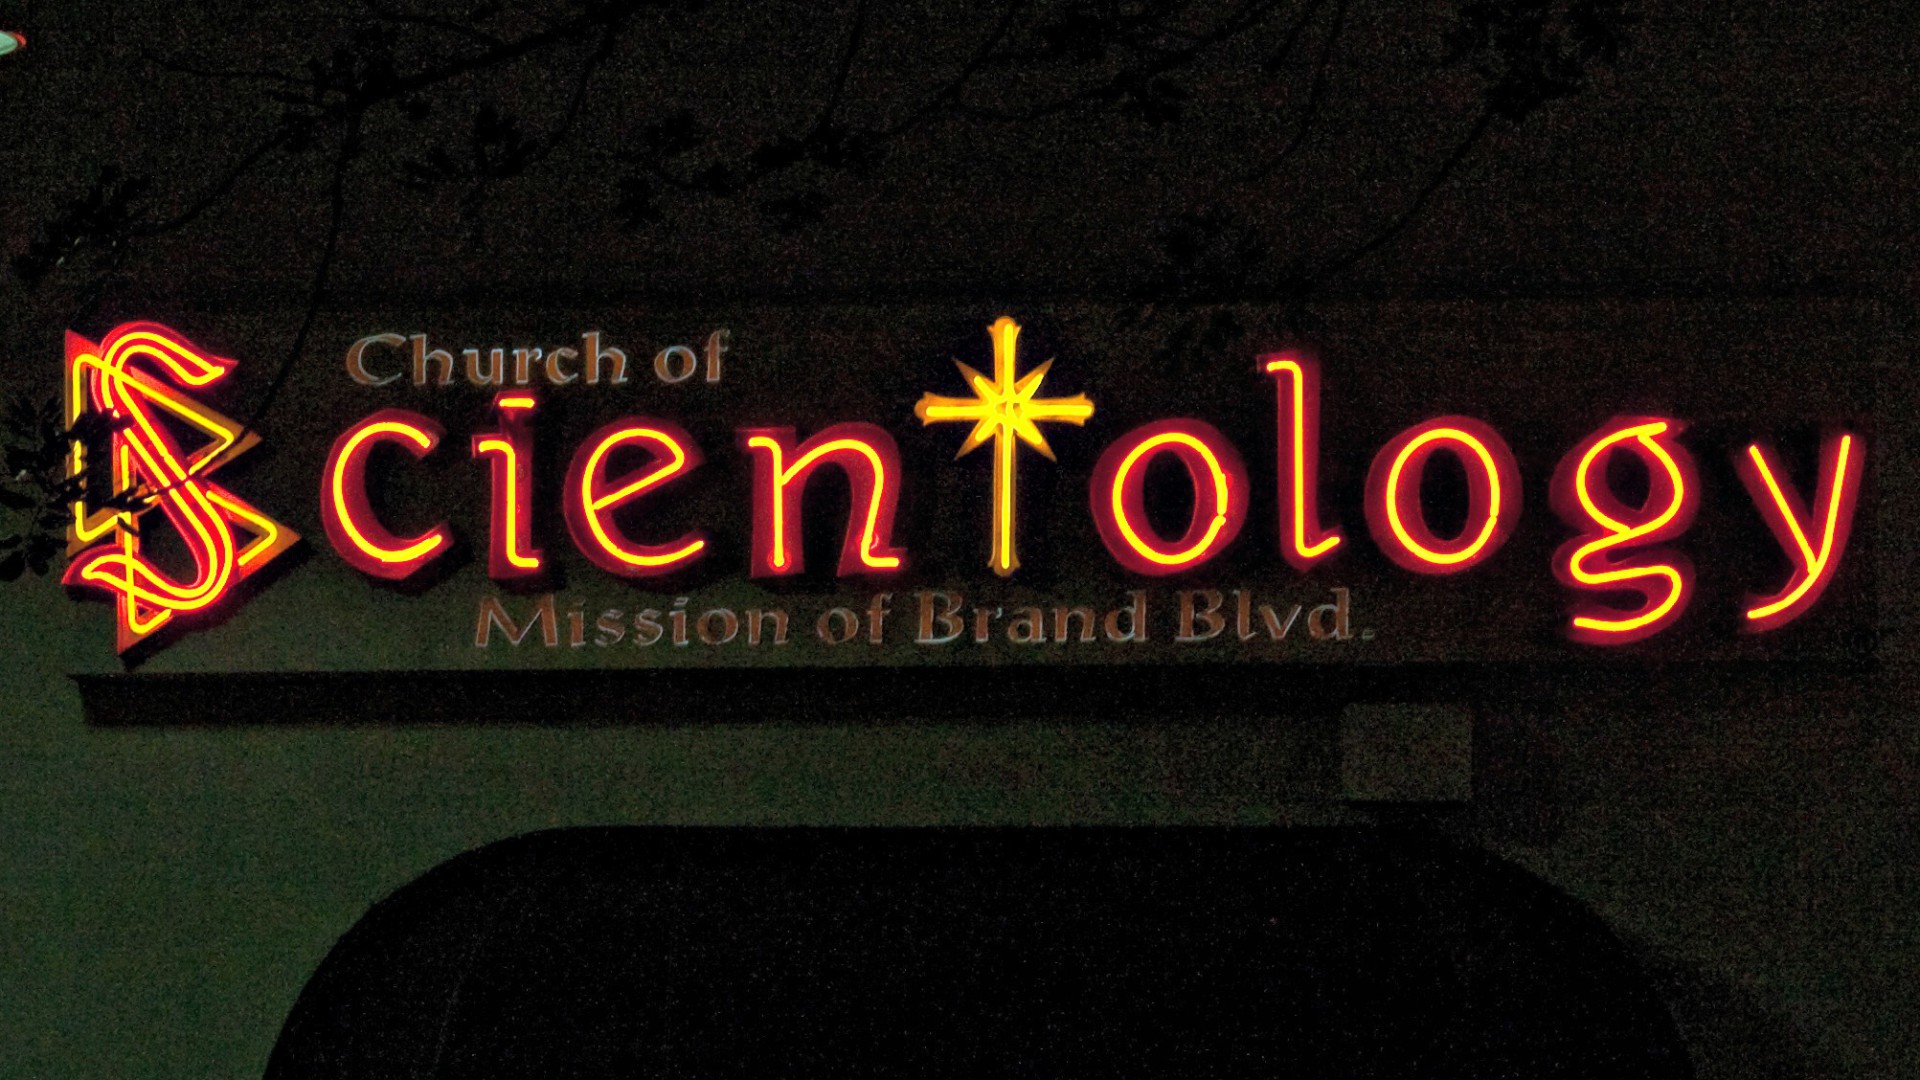 La Scientologie est une organisation controversée (Photo:Thomas Hawk/Flickr/CC BY-NC 2.0)